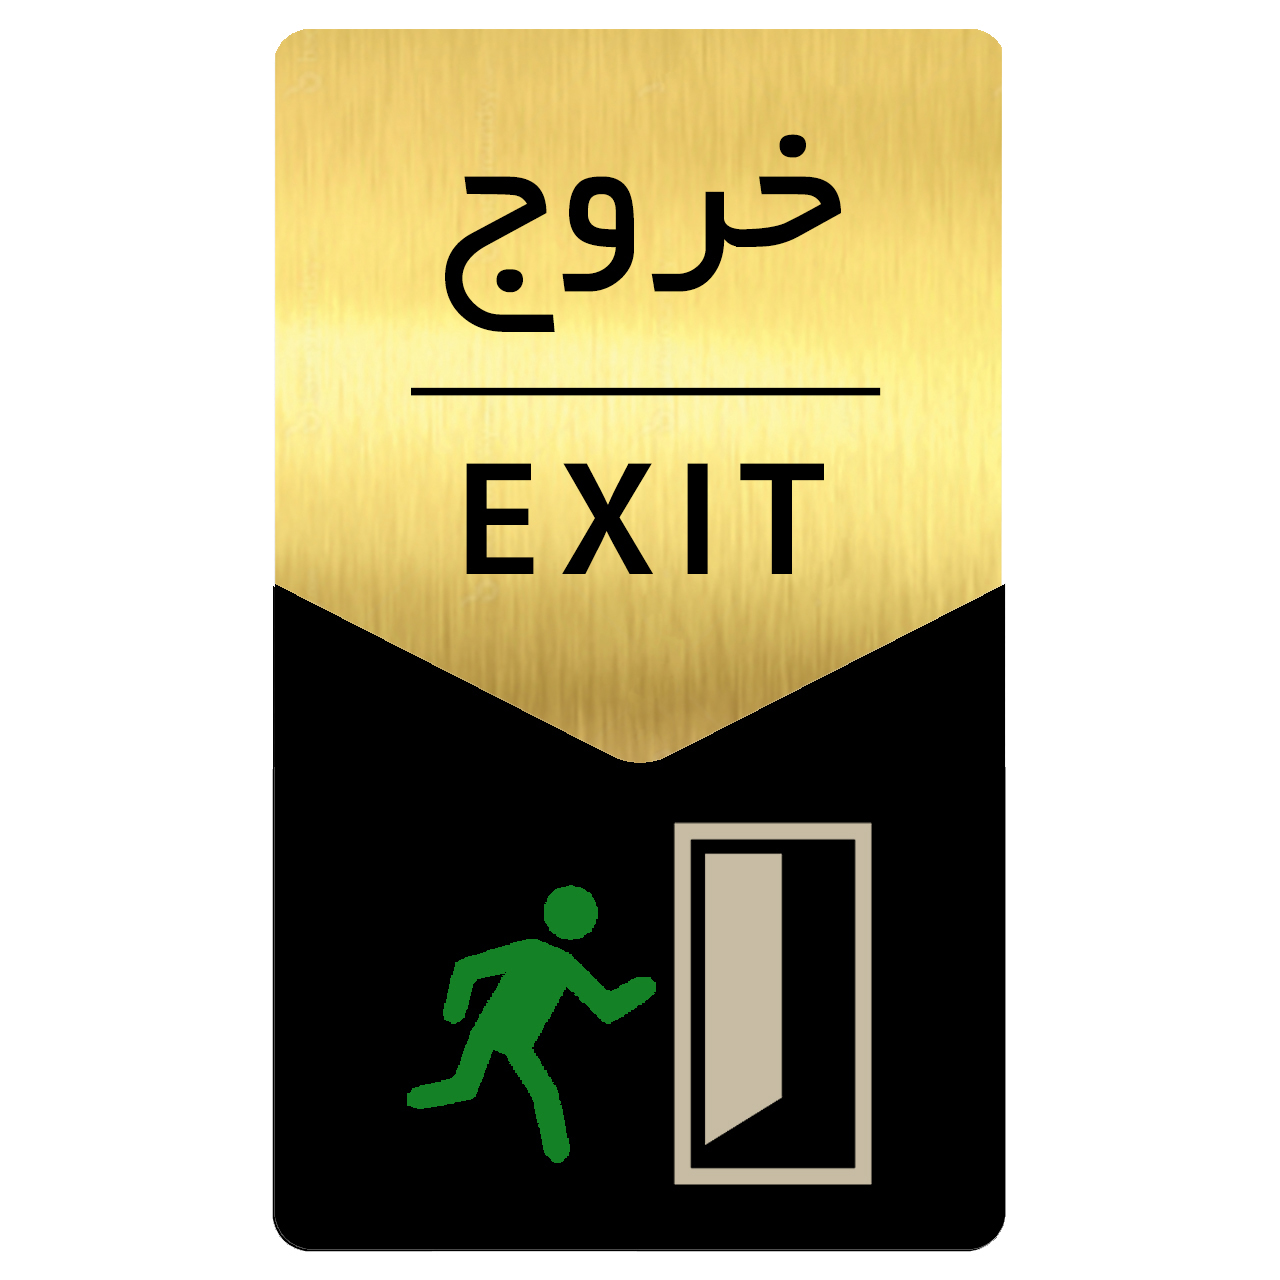 Exit signage